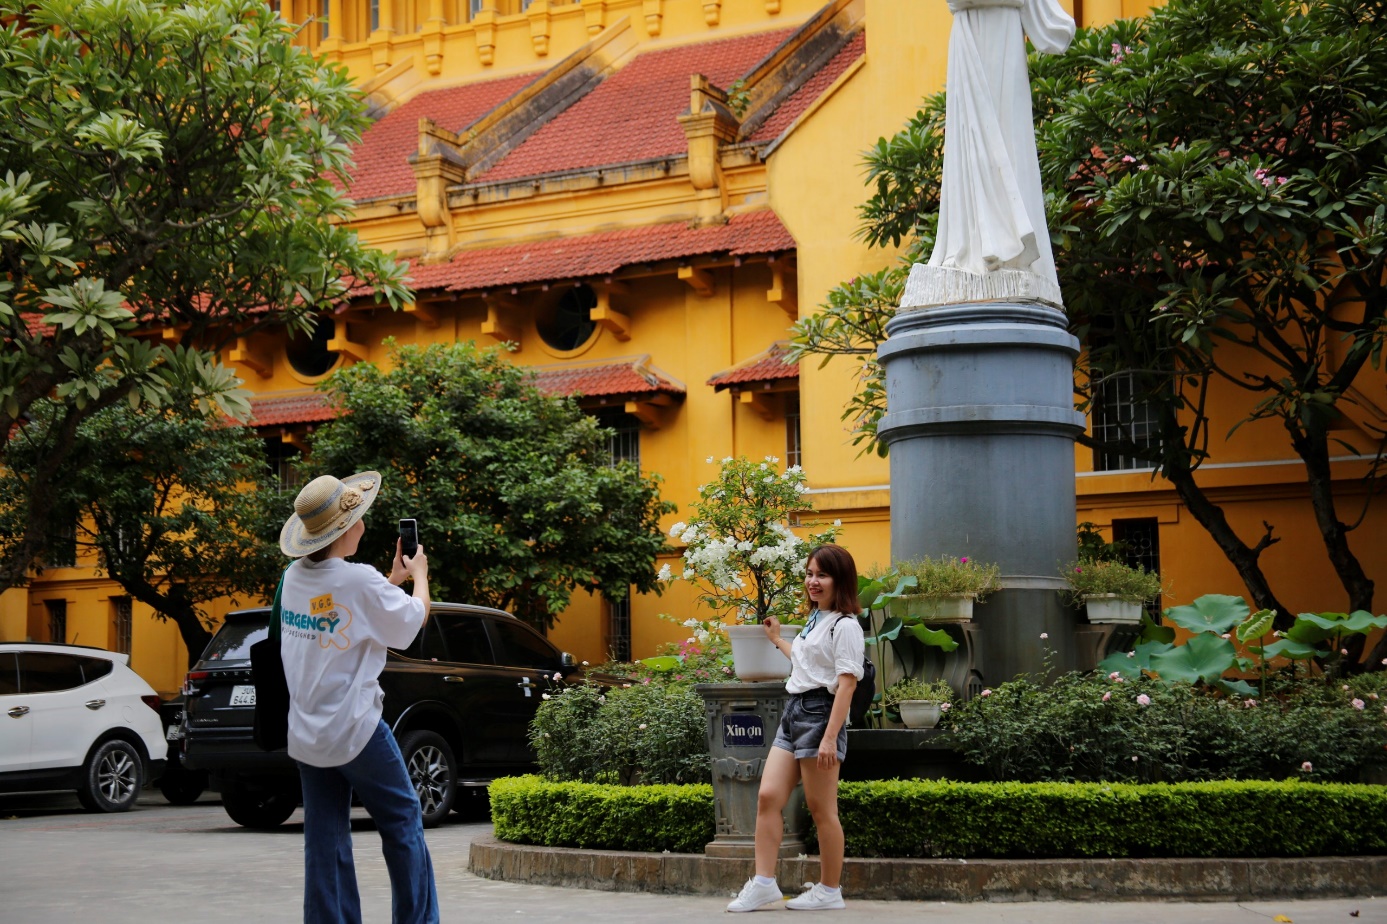 Kiến trúc độc đáo hiếm thấy, nhà thờ cổ nổi tiếng ở Hà Nội hút du khách chụp ảnh - 13